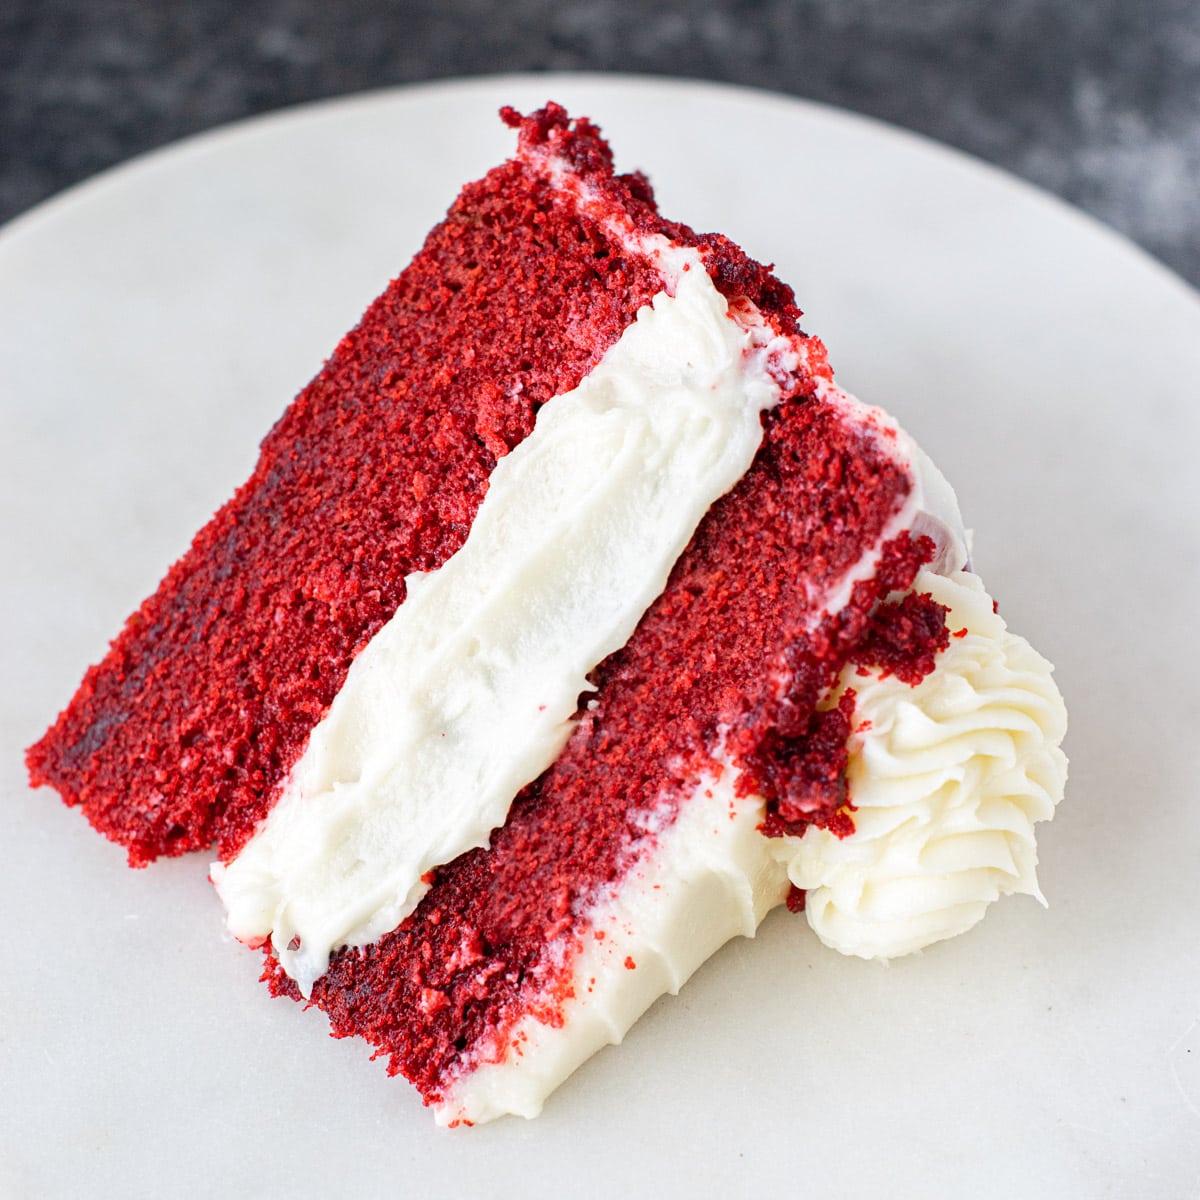 https://carveyourcraving.com/wp-content/uploads/2023/02/Best-Red-velvet-cake.jpg